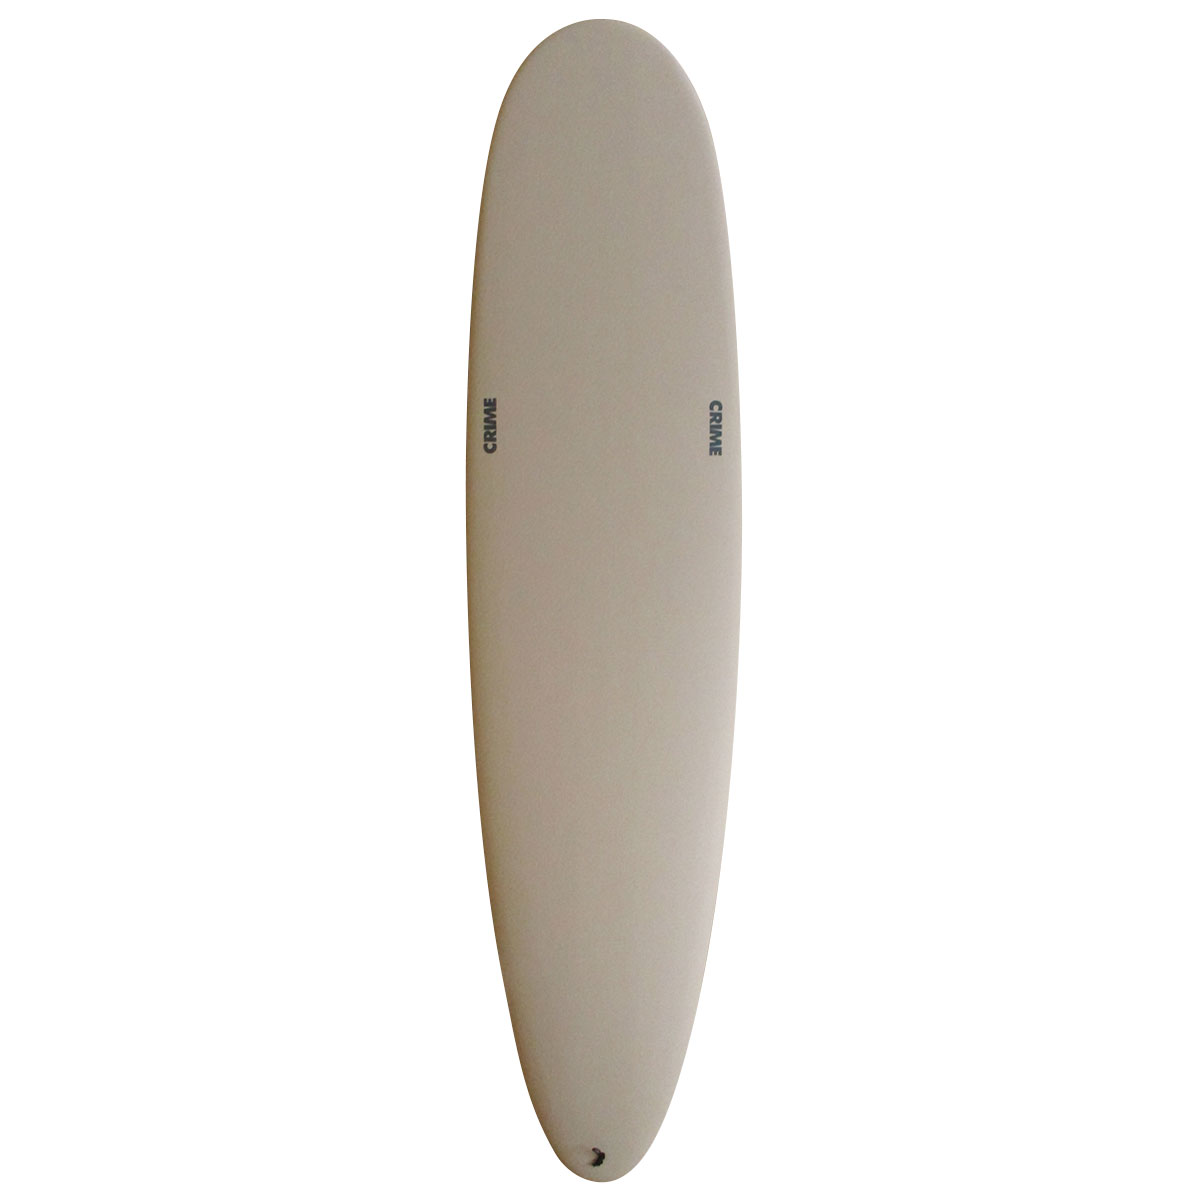 サーフボード検索 | USED SURF×SURF MARKET